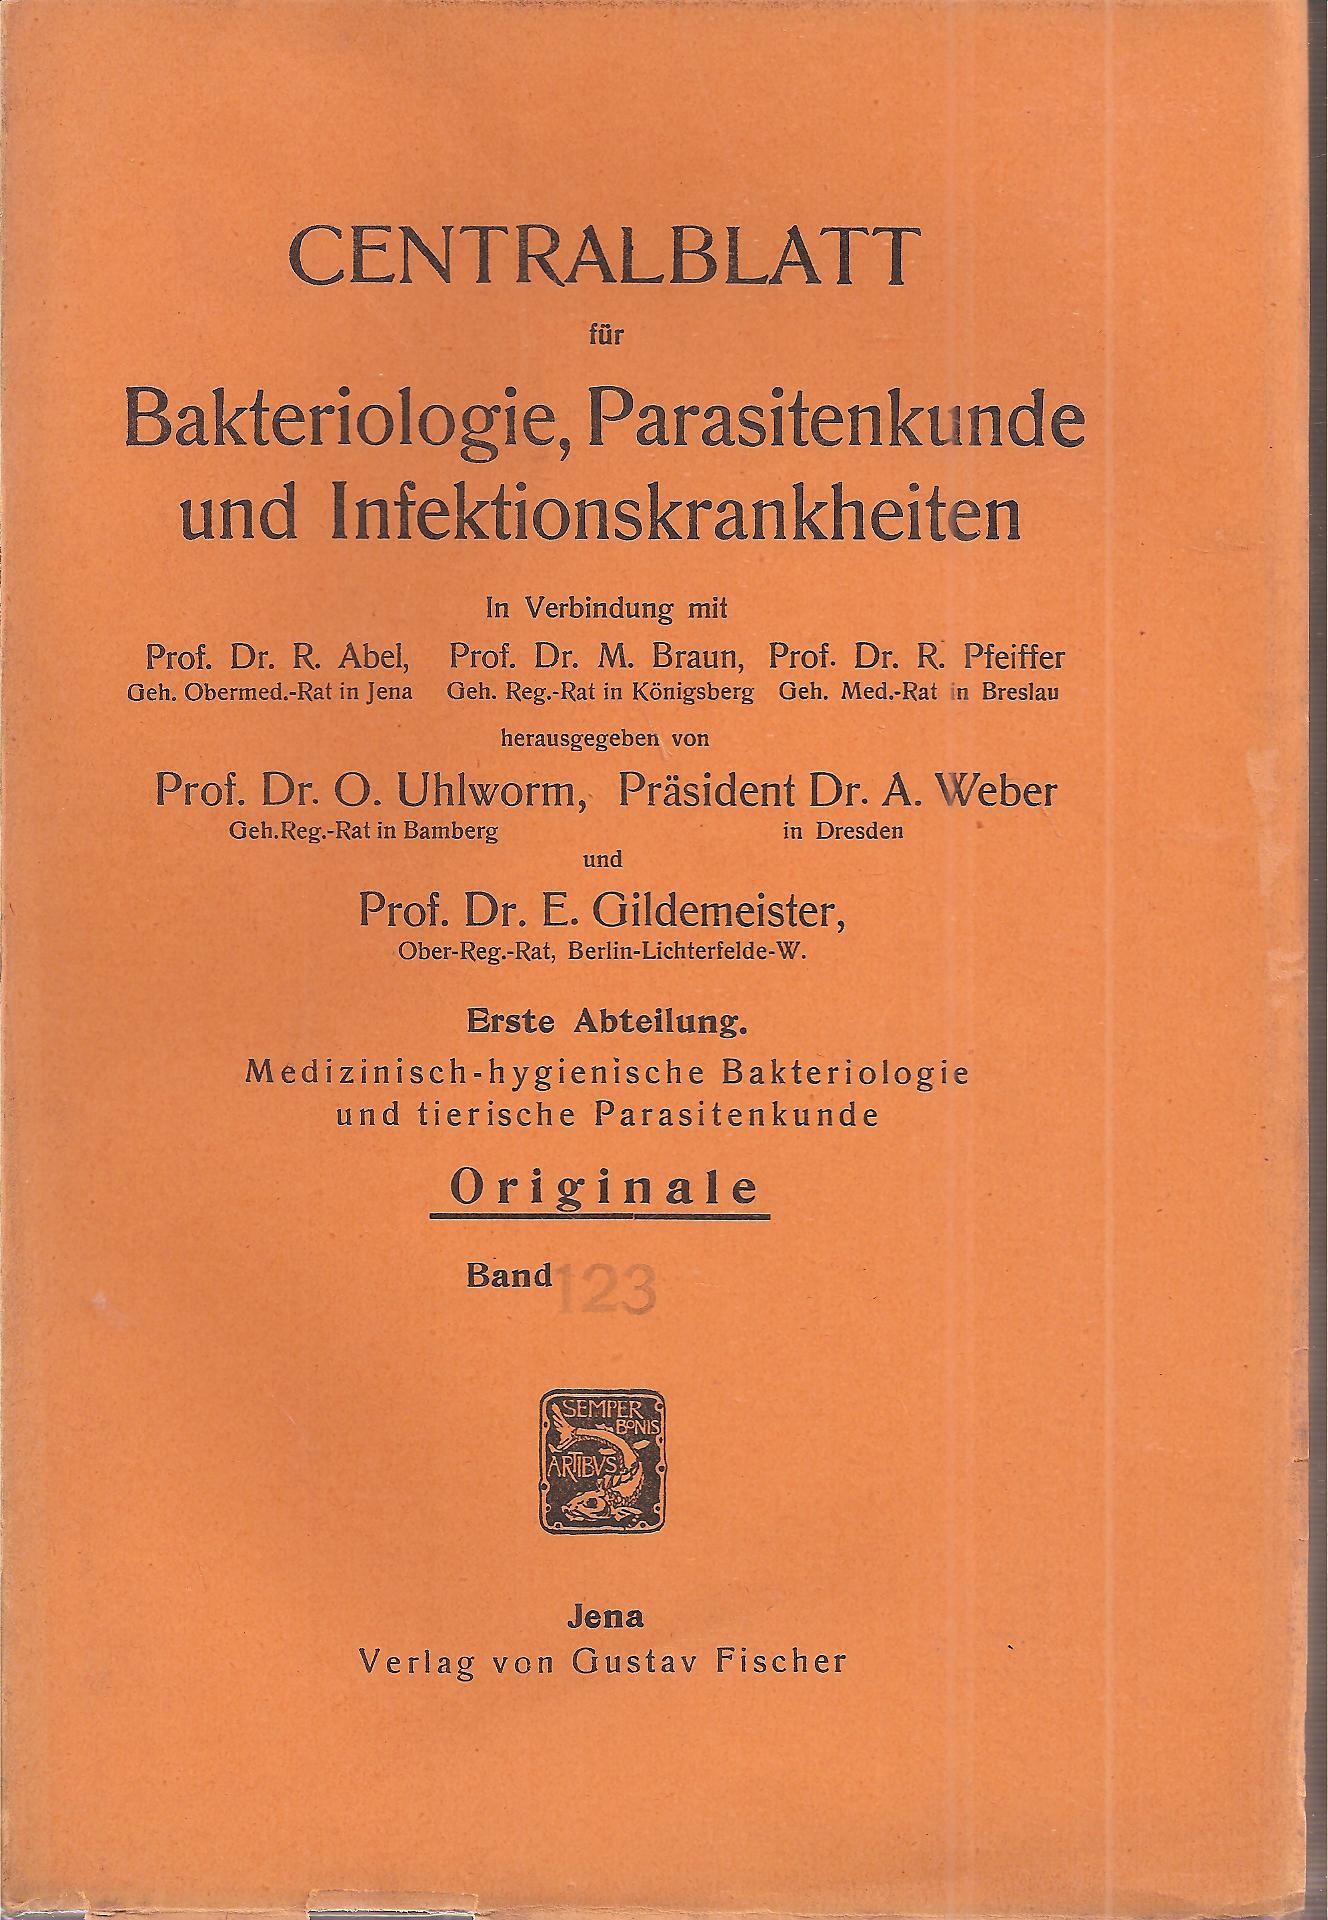 Centralblatt für Bakteriologie,Parasitenkunde  Centralblatt für Bakteriologie,Parasitenkunde Band 123 